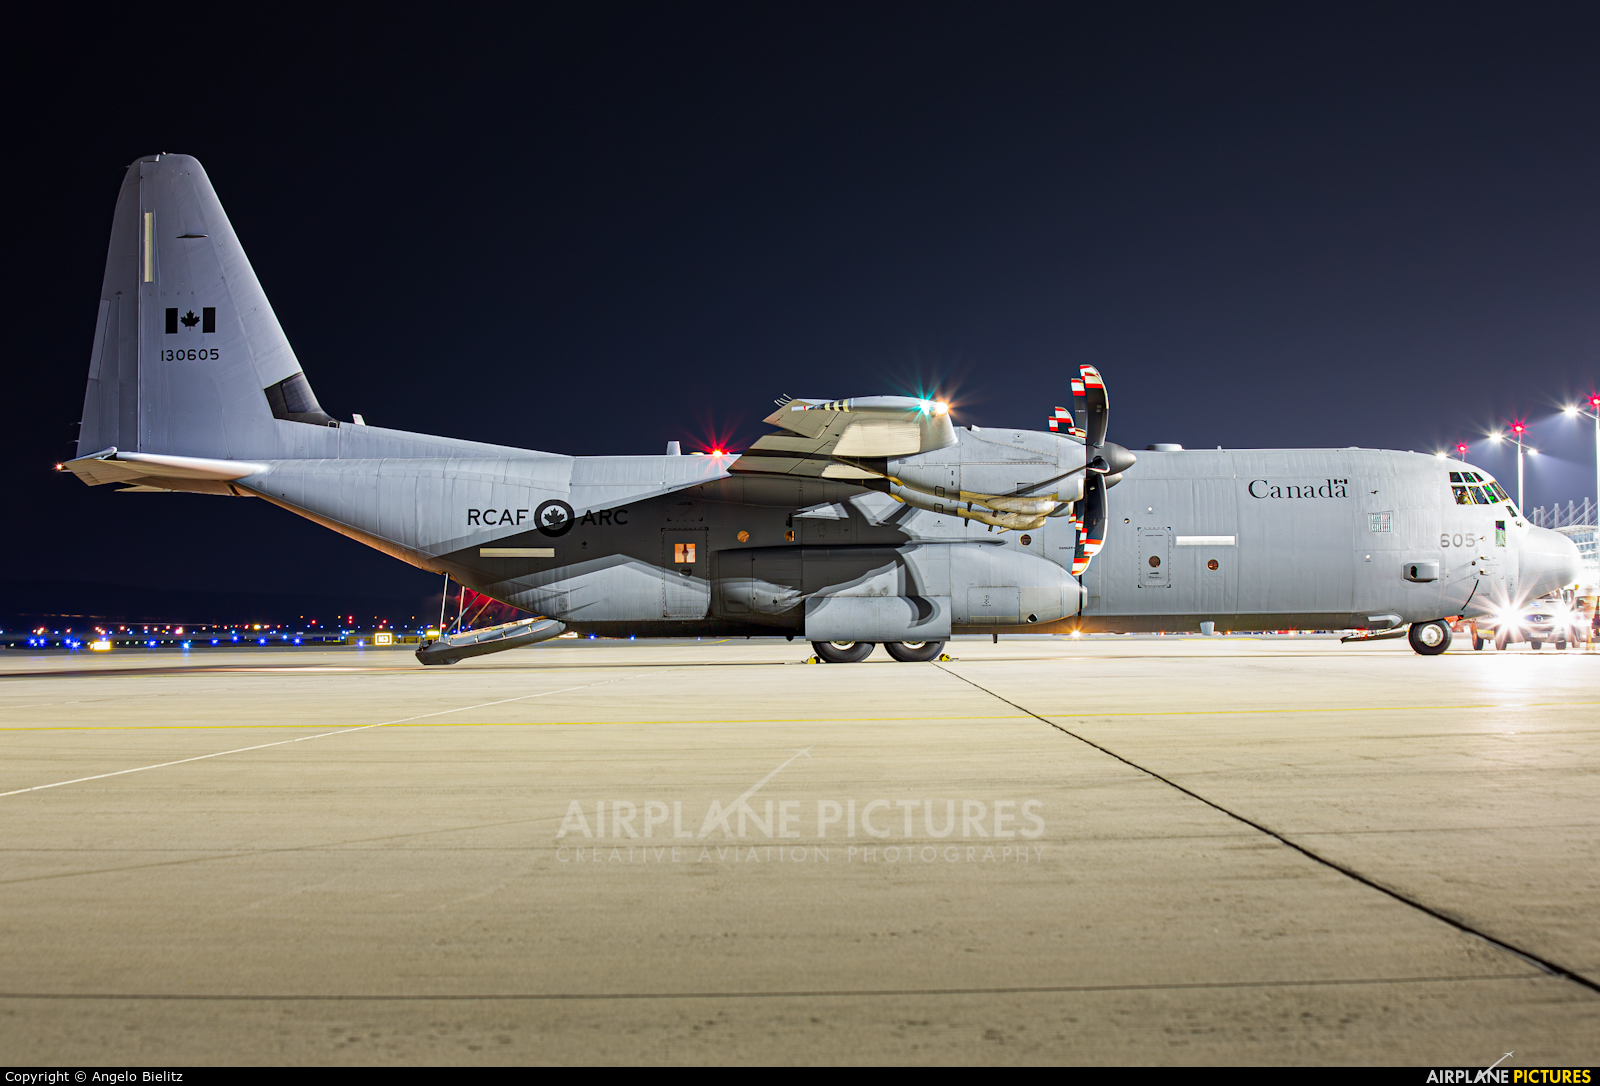 Canada - Air Force 130605 aircraft at Nuremberg